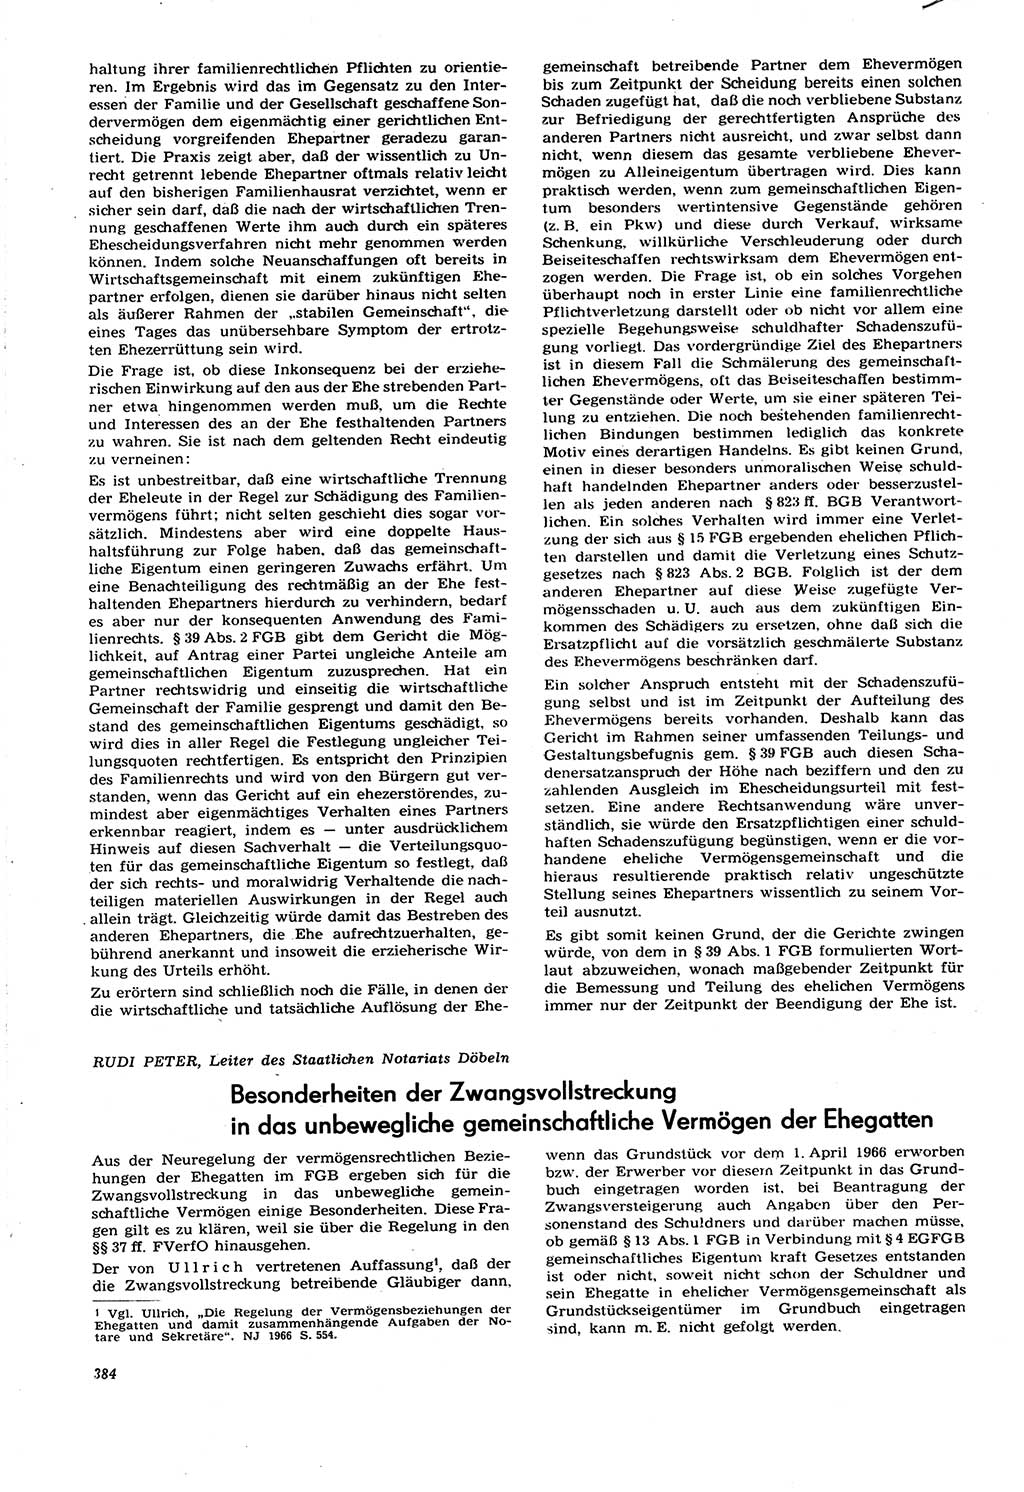 Neue Justiz (NJ), Zeitschrift für Recht und Rechtswissenschaft [Deutsche Demokratische Republik (DDR)], 21. Jahrgang 1967, Seite 384 (NJ DDR 1967, S. 384)